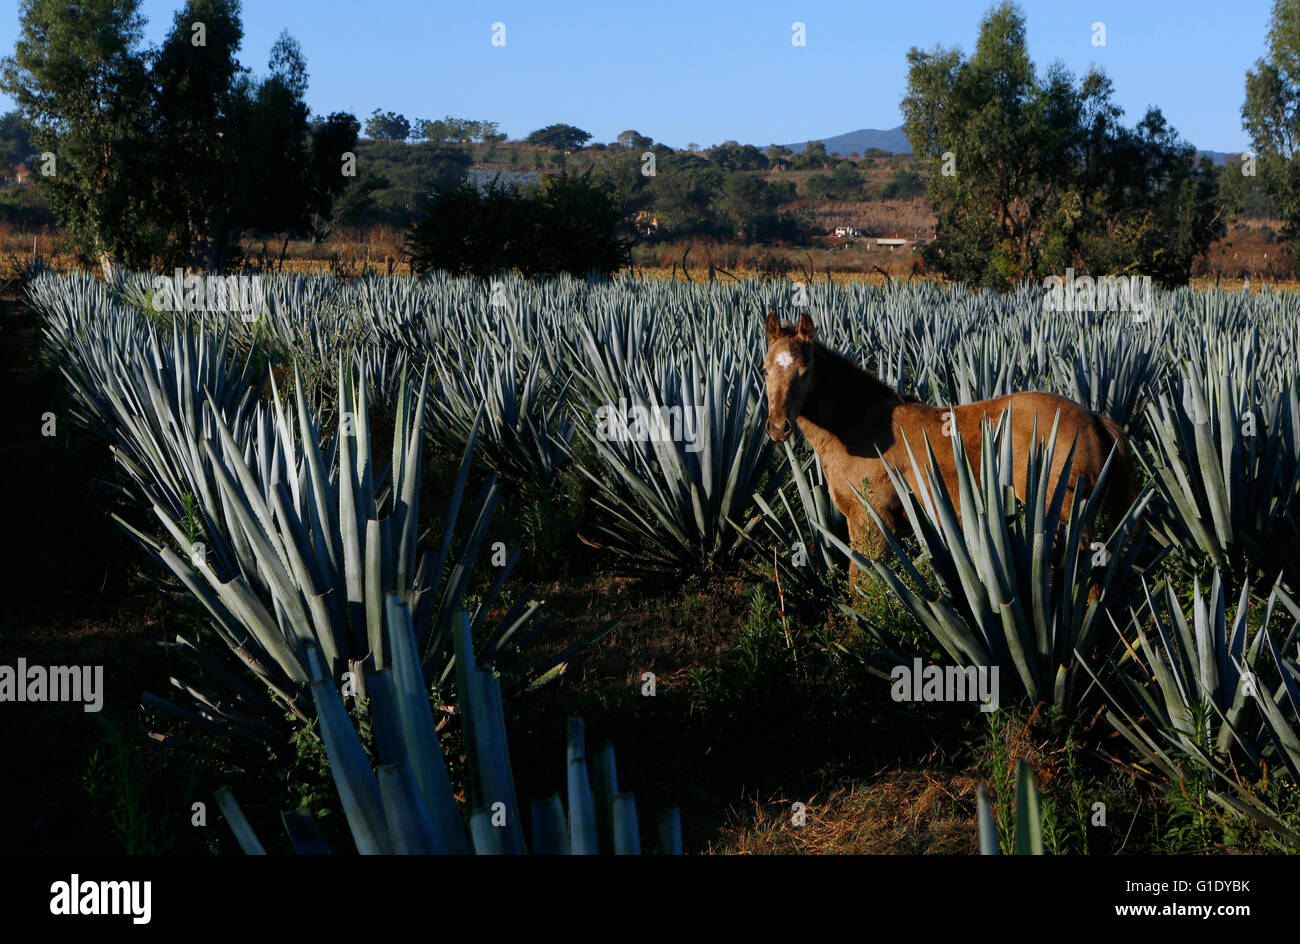 Chevaux dans un champ d'agave autour d'El Arenal, Jalisco, Mexique. Banque D'Images